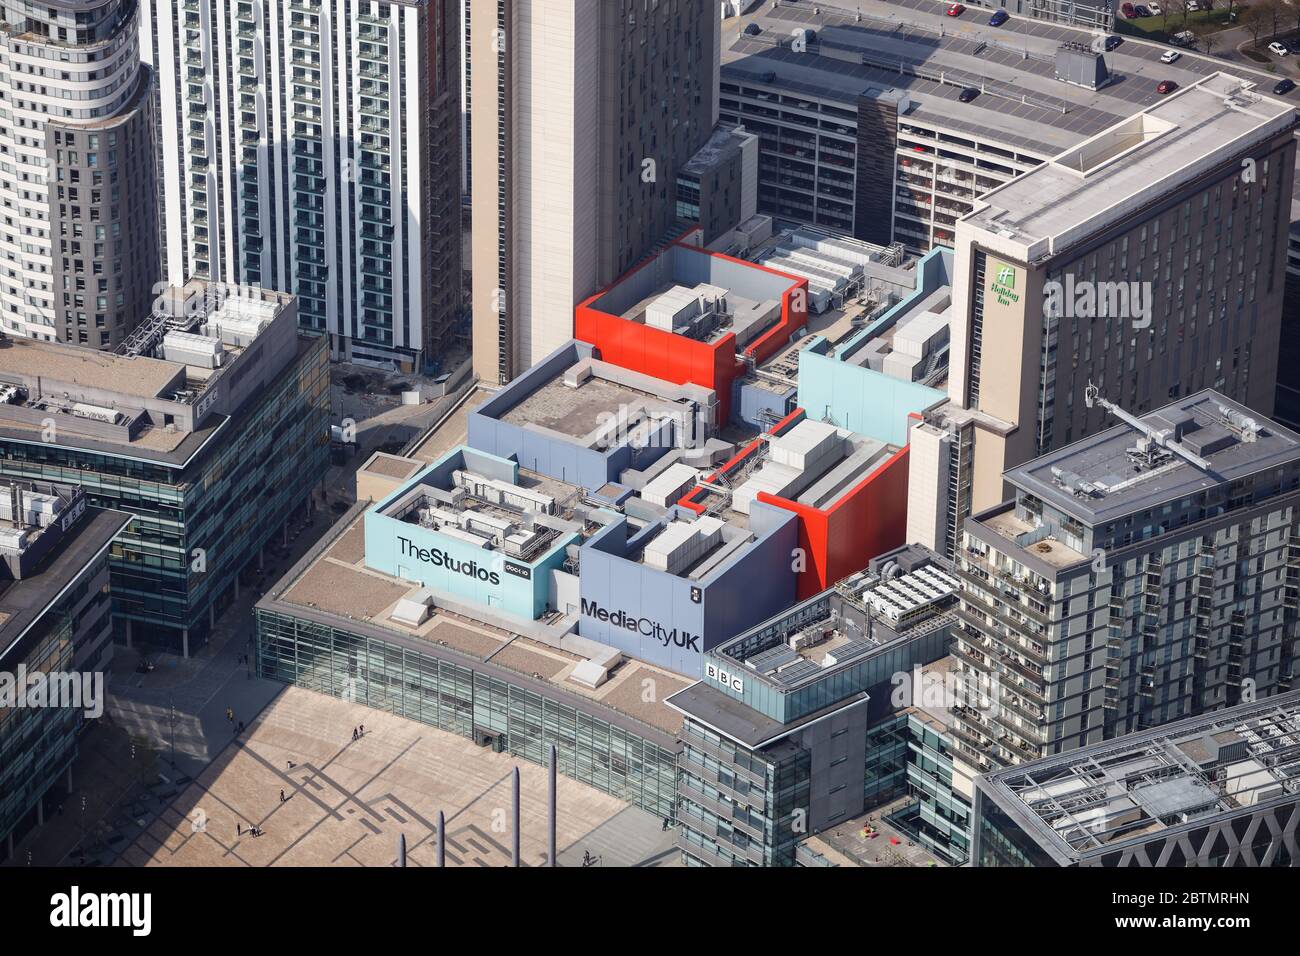 Vue aérienne de MediaCity Royaume-Uni à Salford, Manchester, Royaume-Uni Banque D'Images